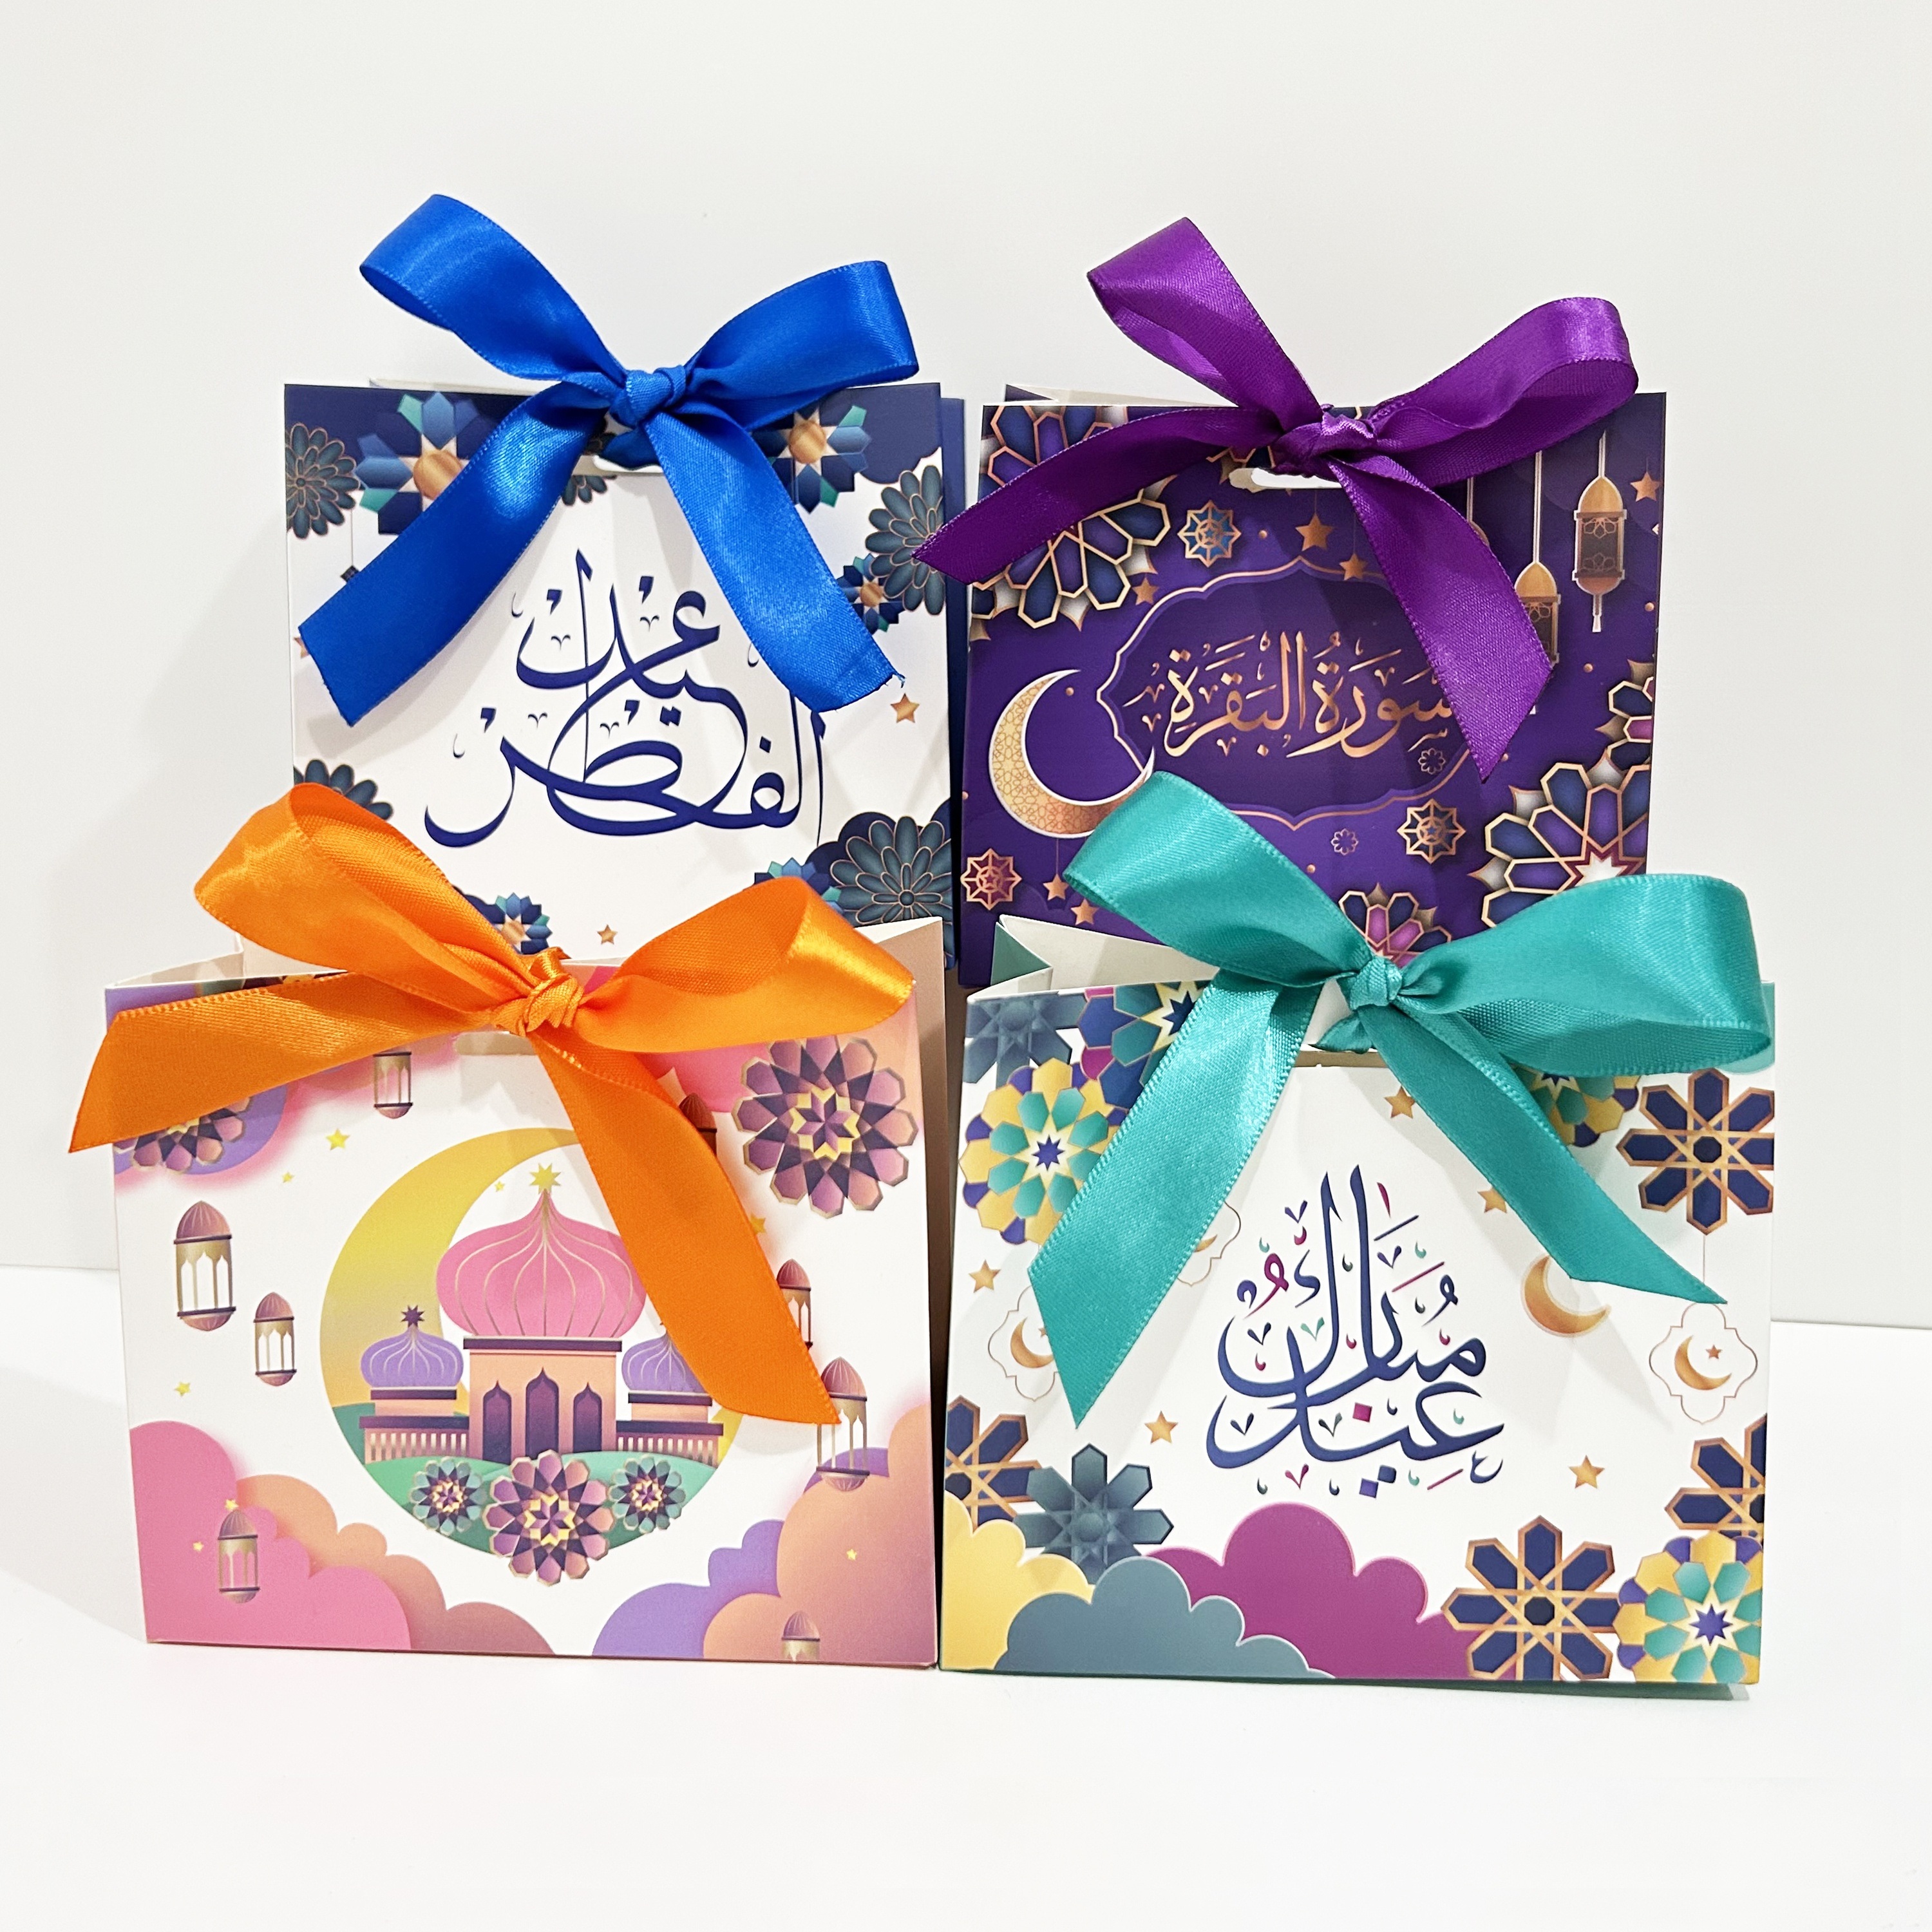 Caja de Chocolate para pastel de Ramadán Eid Mubarak, suministros de fiesta  musulmanes islámicos, paquete de recuerdo de regalo Eid al-fitr,  suministros de decoración Mubarak, 2024